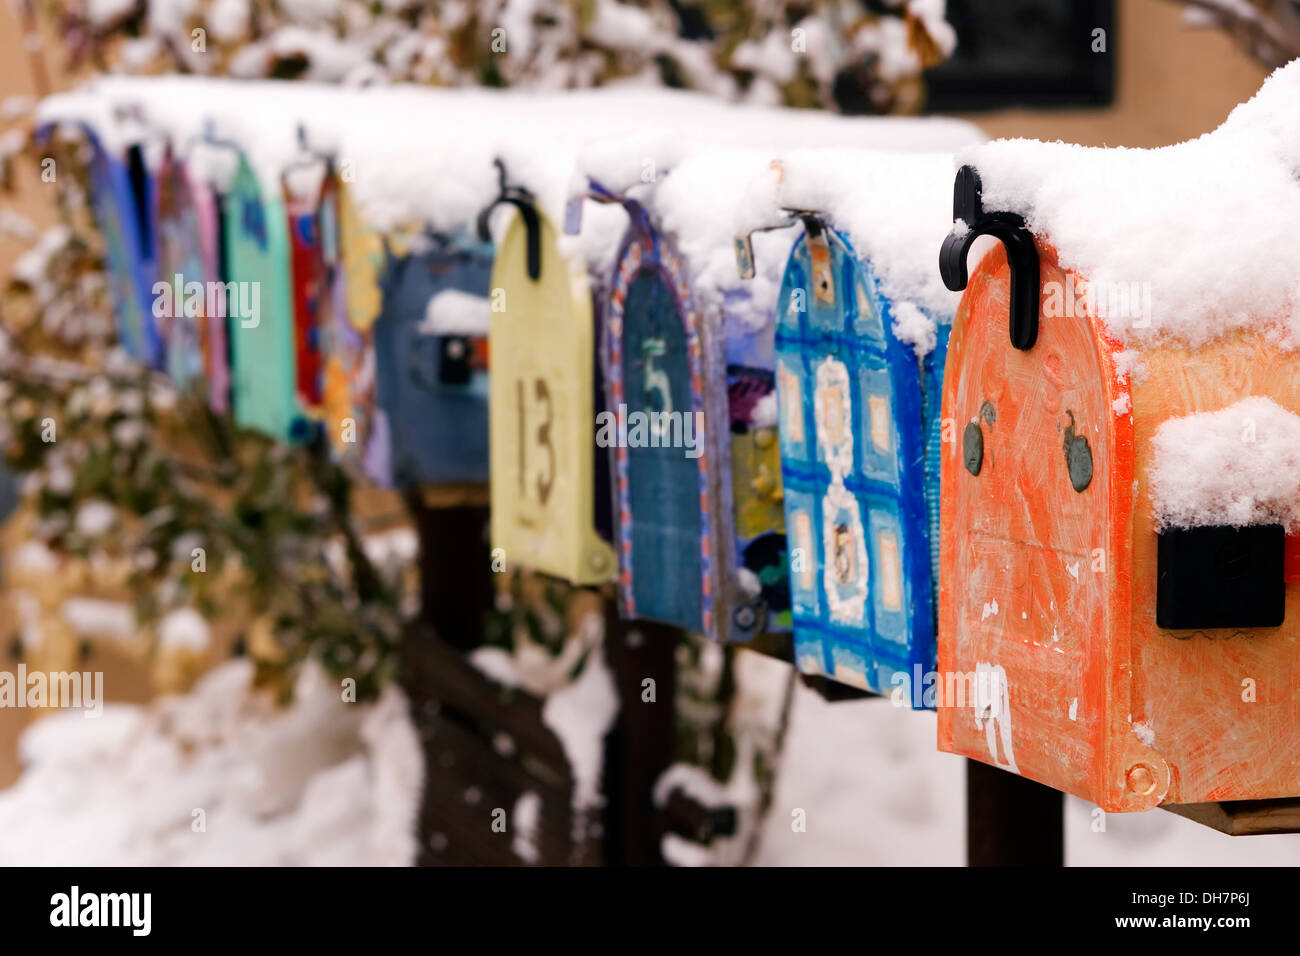 Boîtes aux lettres colorées couvertes de neige, Canyon Road, Santa Fe, Nouveau Mexique USA Banque D'Images